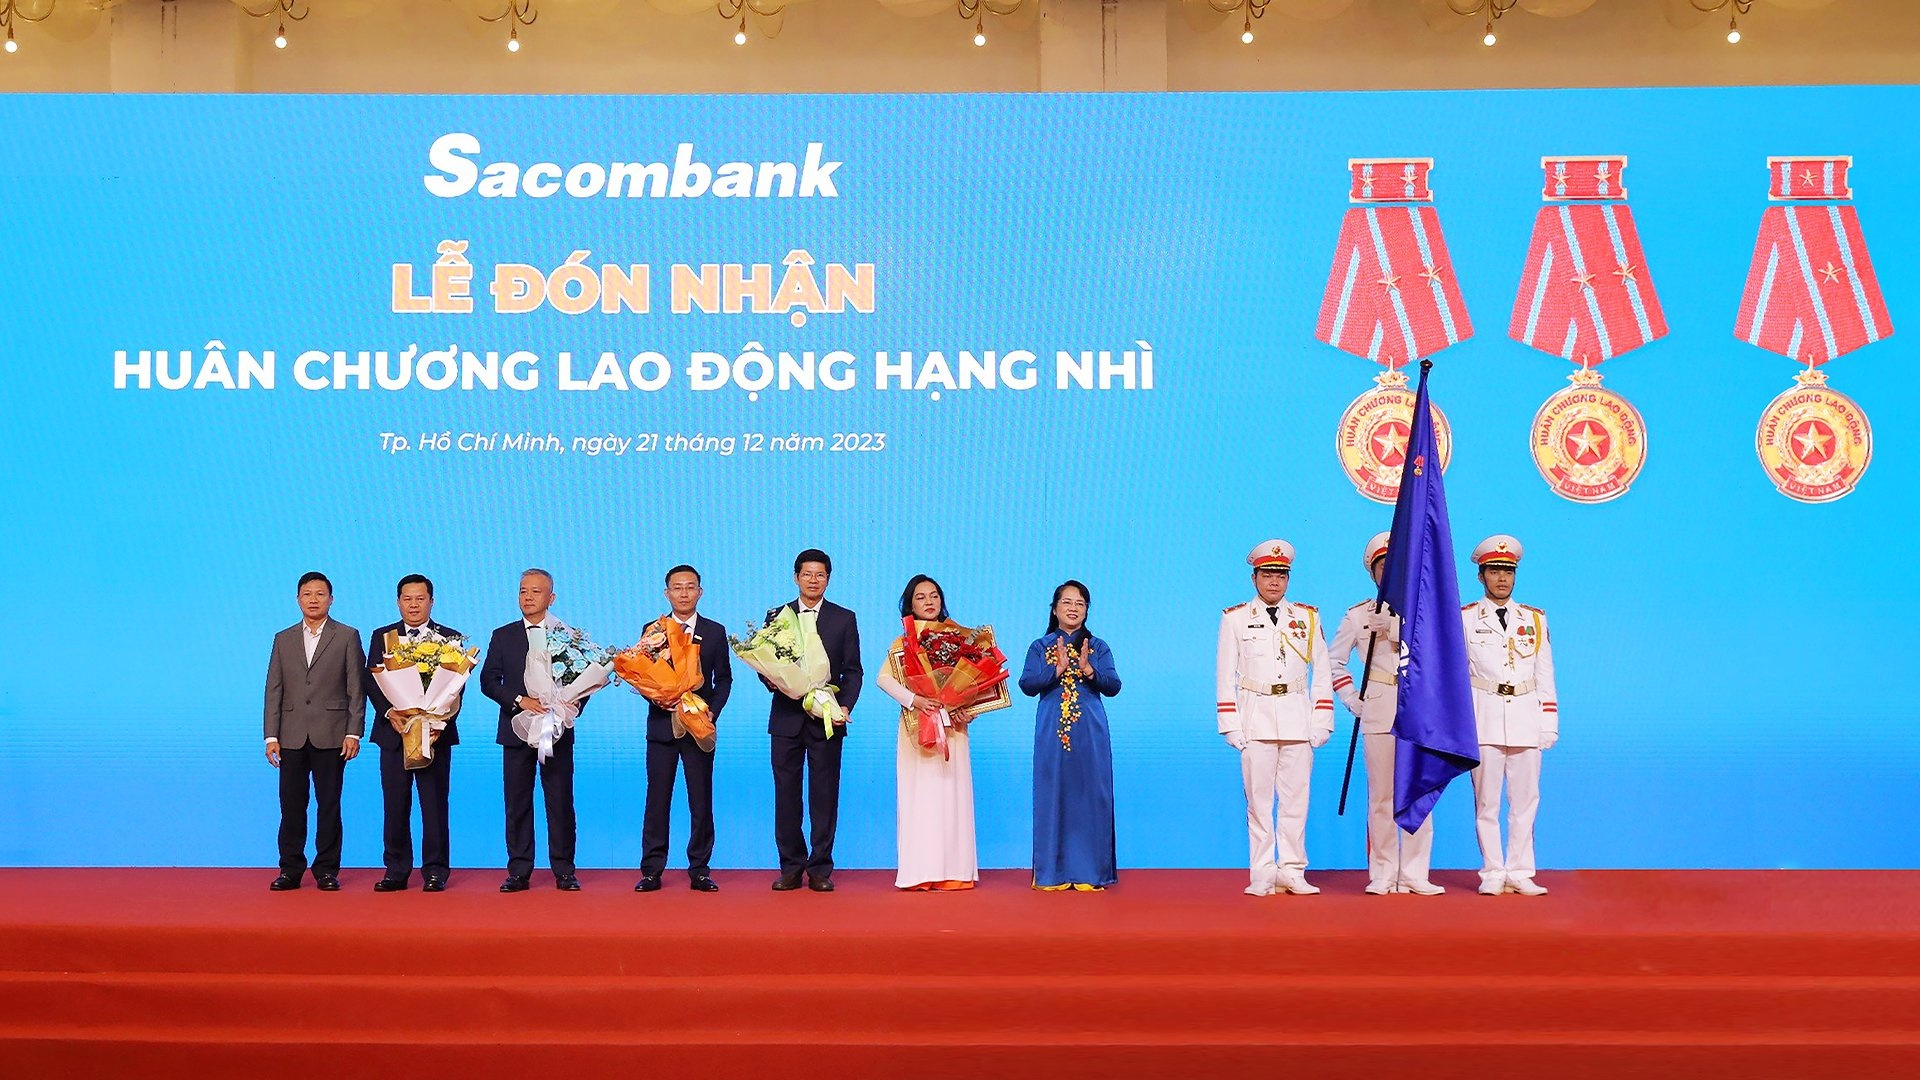 Sacombank đón nhận Huân chương Lao động Hạng Nhì của Chủ tịch nước Cộng hòa xã hội chủ nghĩa Việt Nam trao tặng.